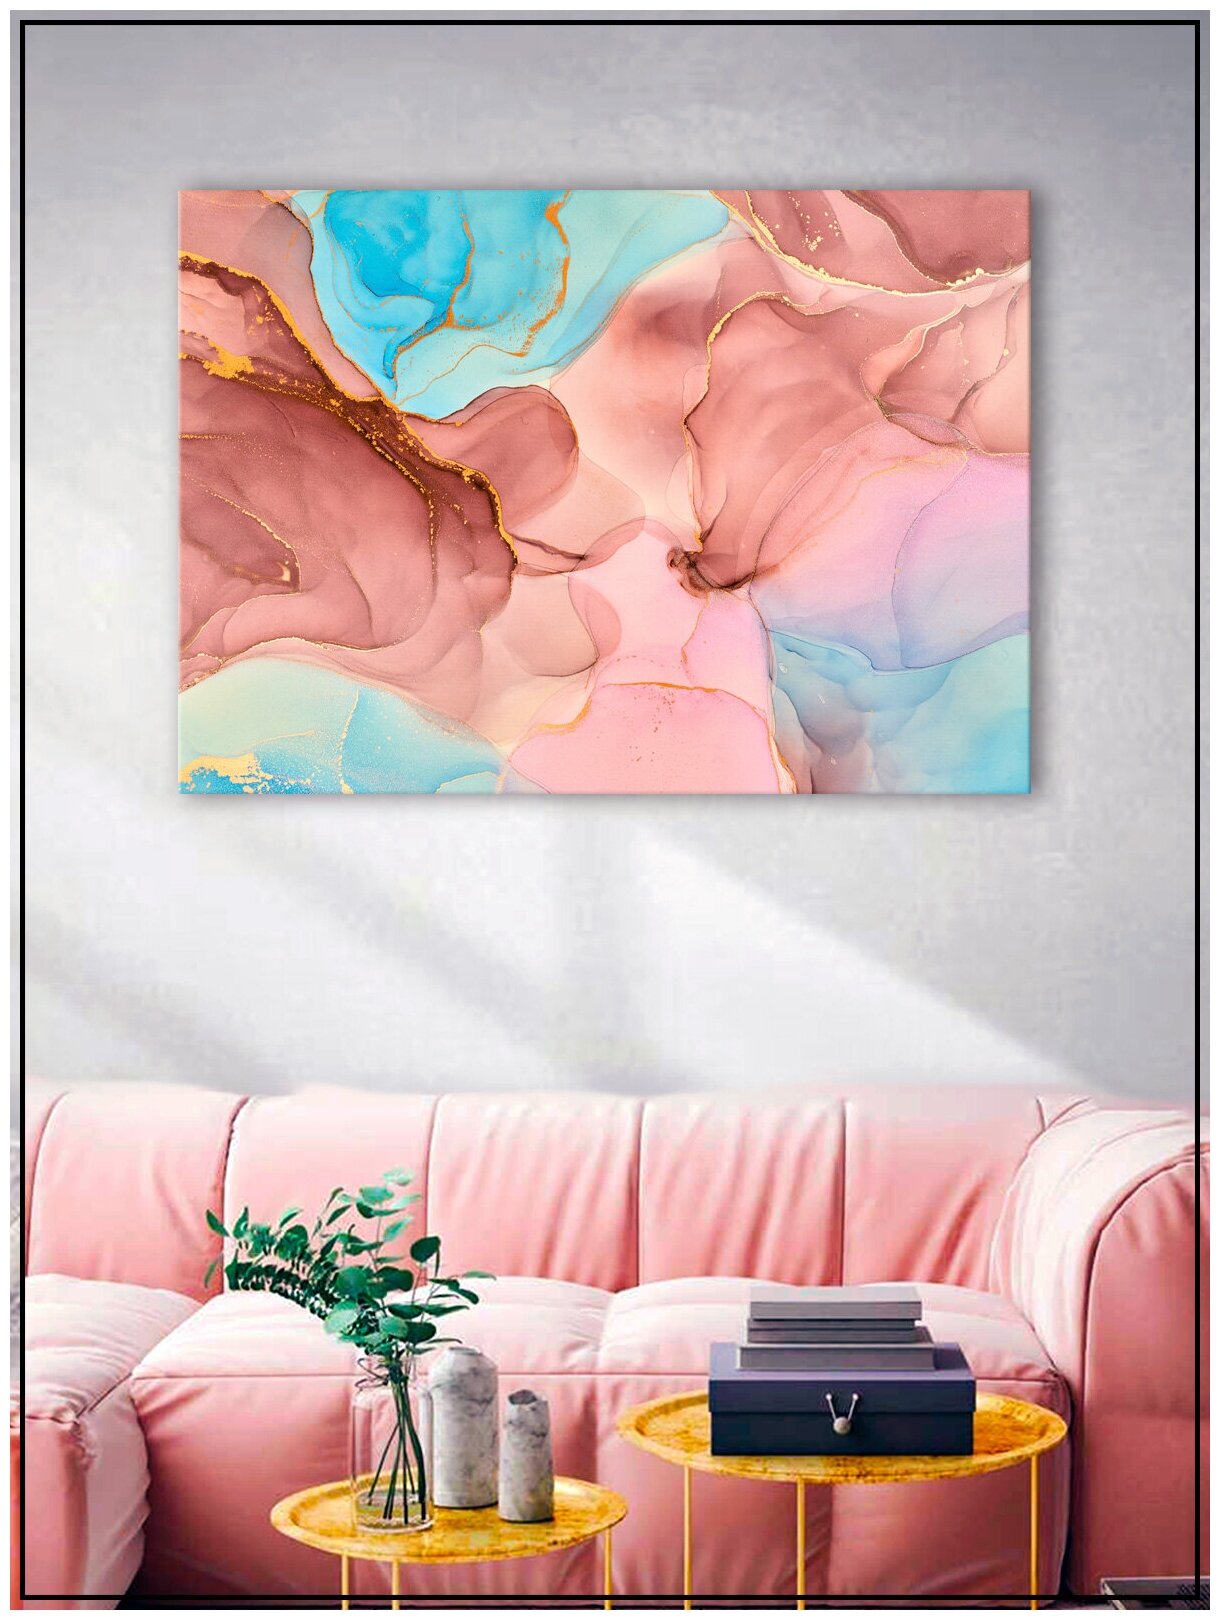 Картина для интерьера на натуральном хлопковом холсте "Абстрактный разноцветный мрамор", 30*40см, холст на подрамнике, картина в подарок